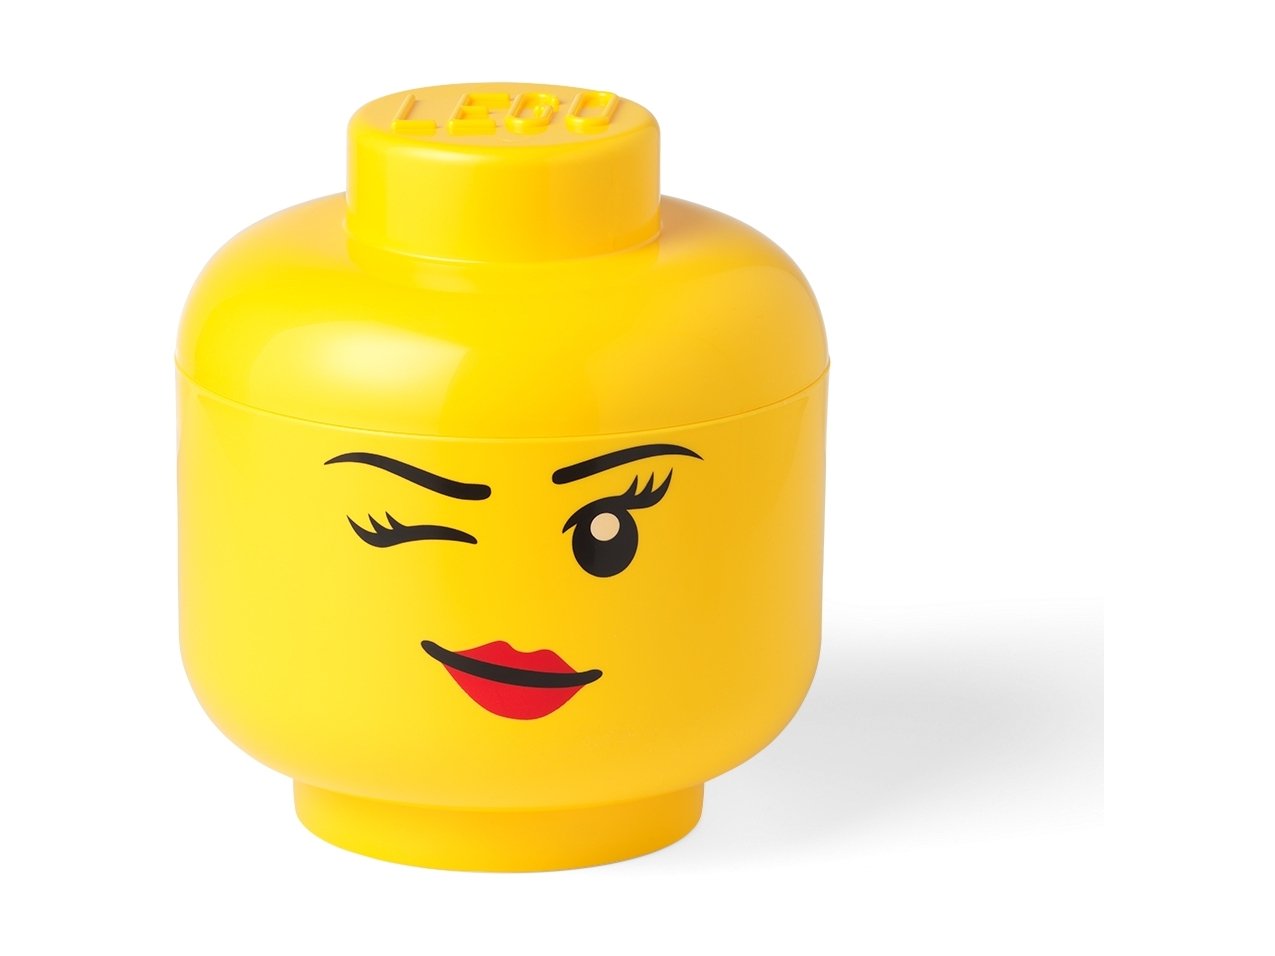 LEGO 5006956 Duży pojemnik w kształcie głowy mrugającej minifigurki